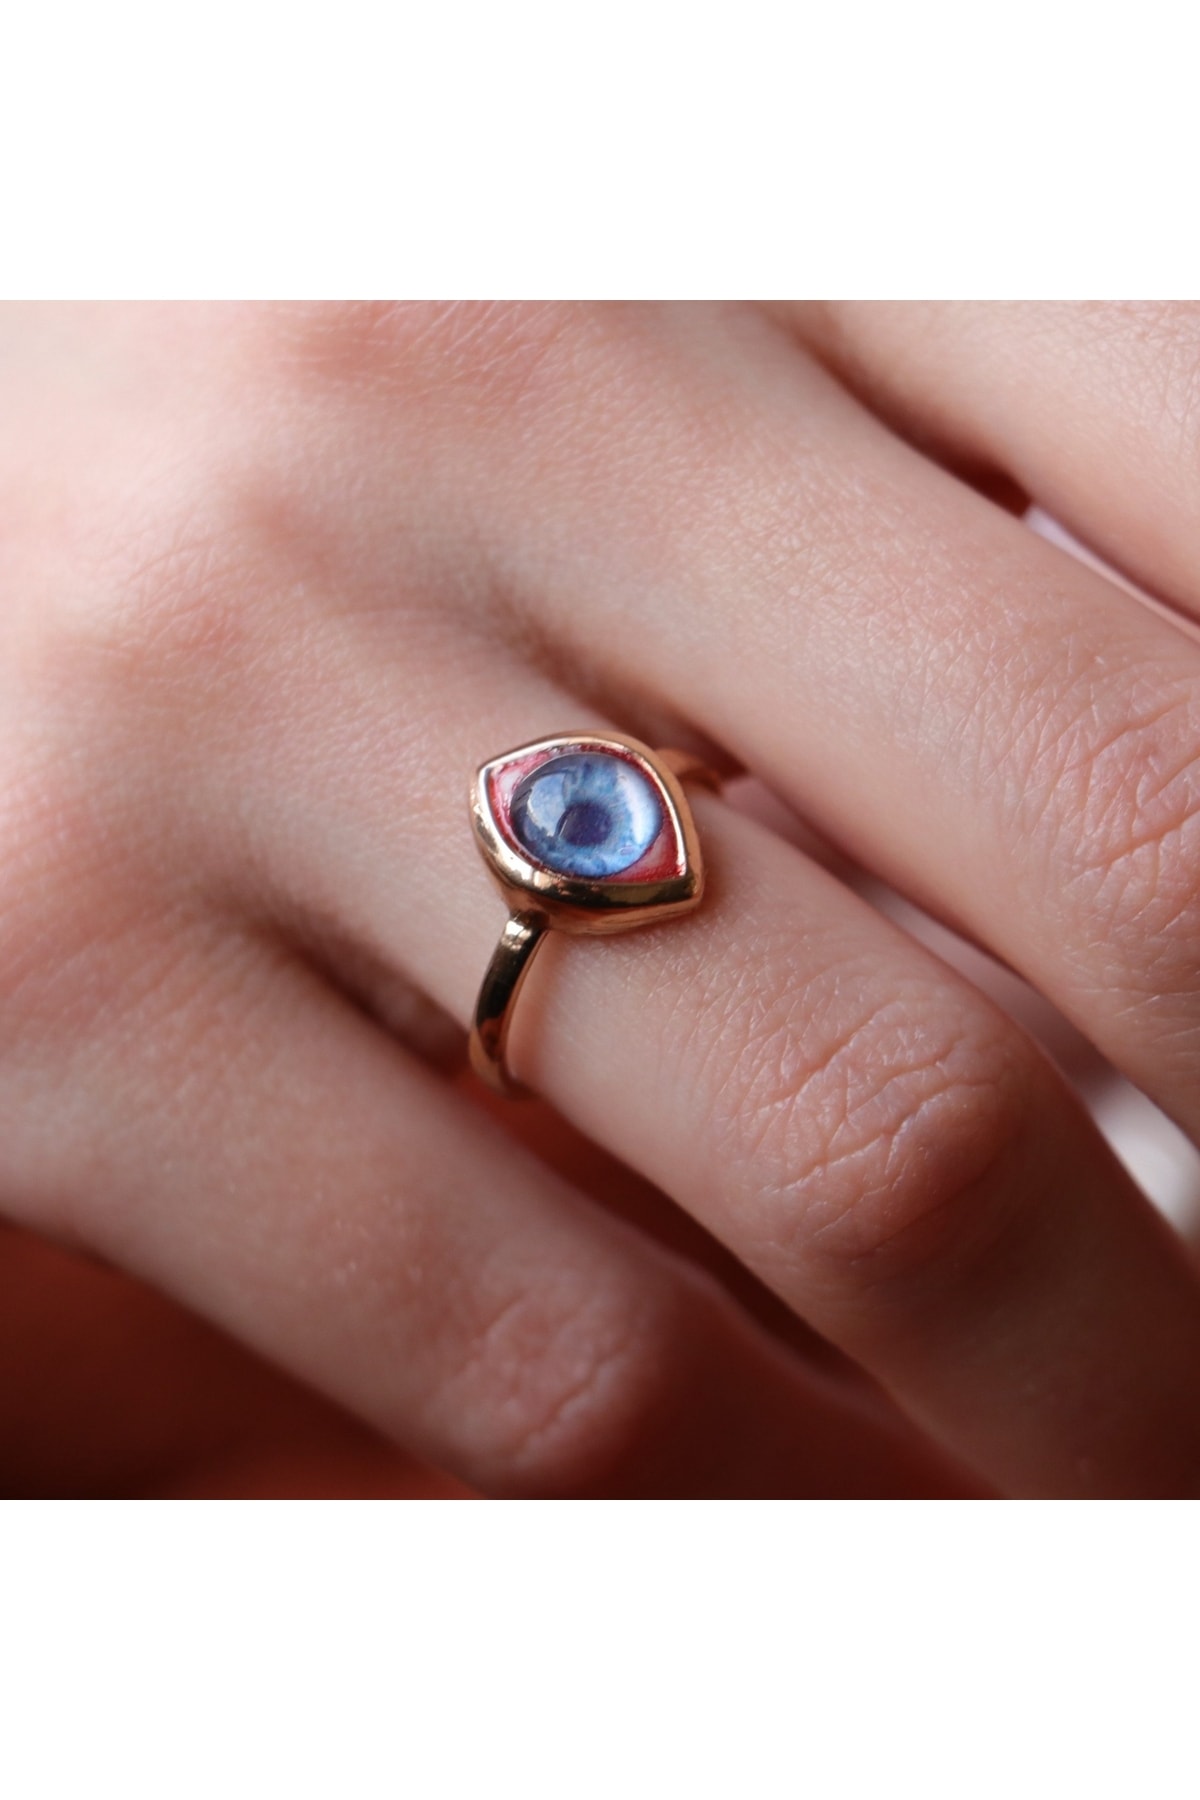 Realistic Blue Eye Ring